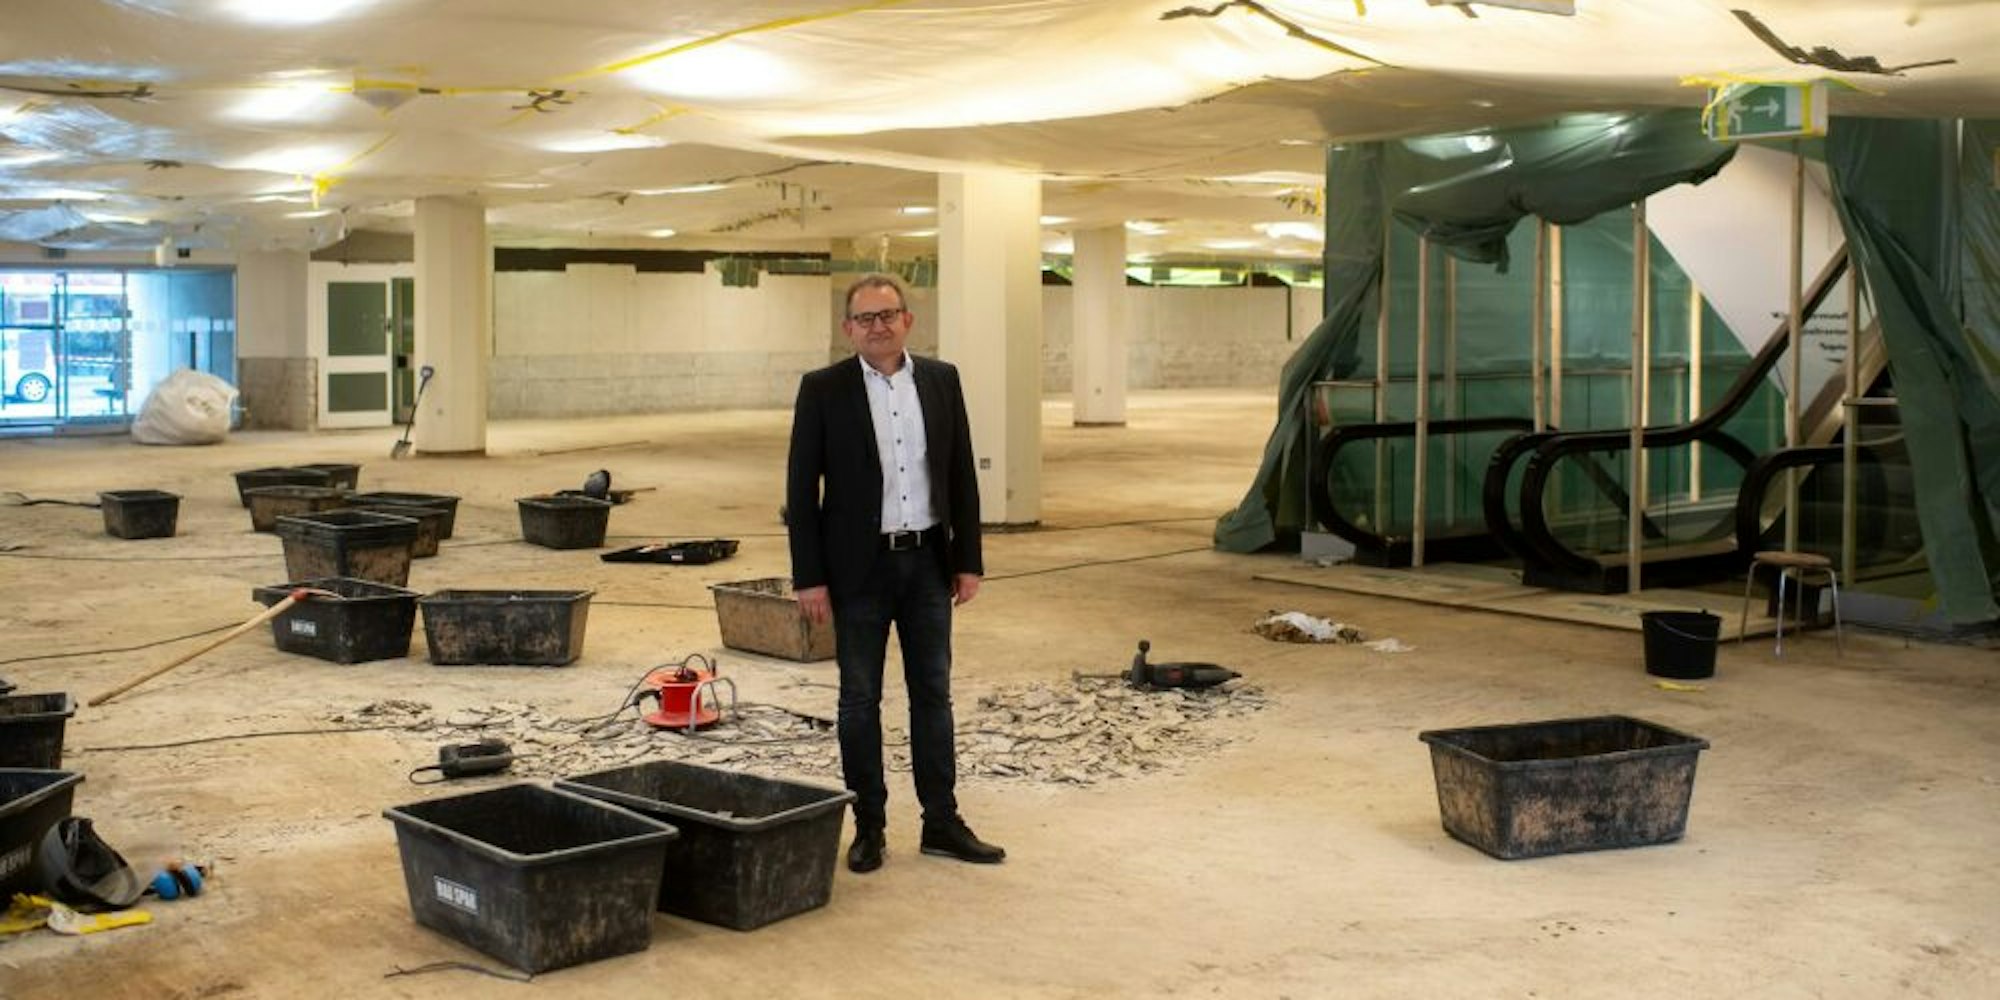 So sieht man den Kaufhof selten: völlig leer. Geschäftsführer Hans-Peter Neußer plant die Teileröffnung in wenigen Wochen.